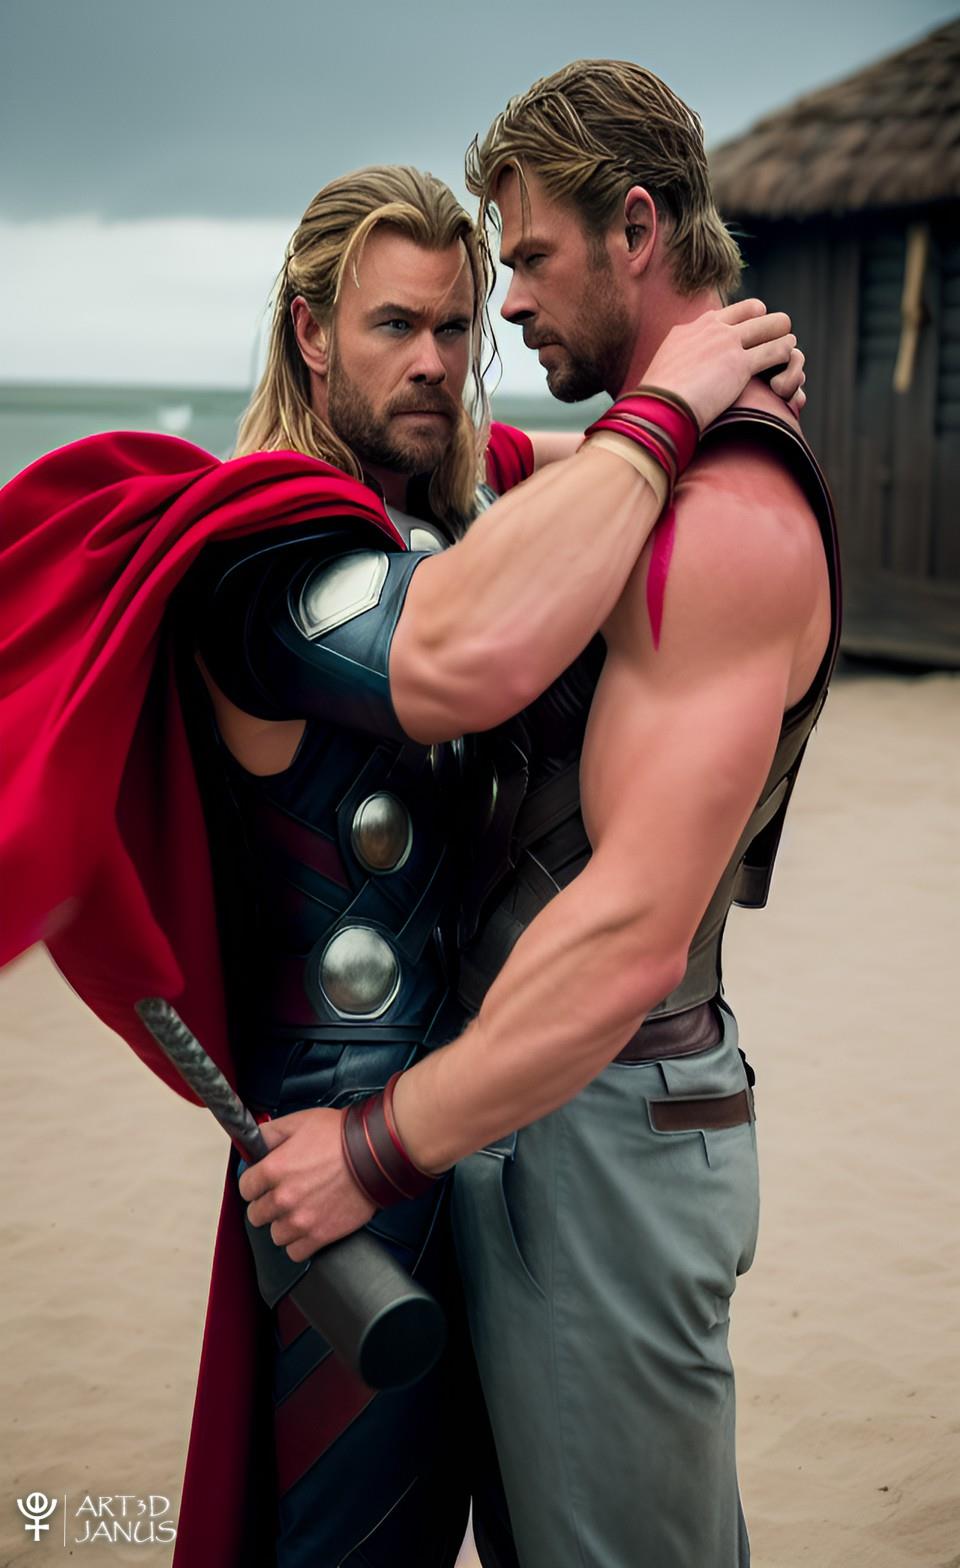 Chris Hemsworth, o Thor, faz campanha a favor dos gays